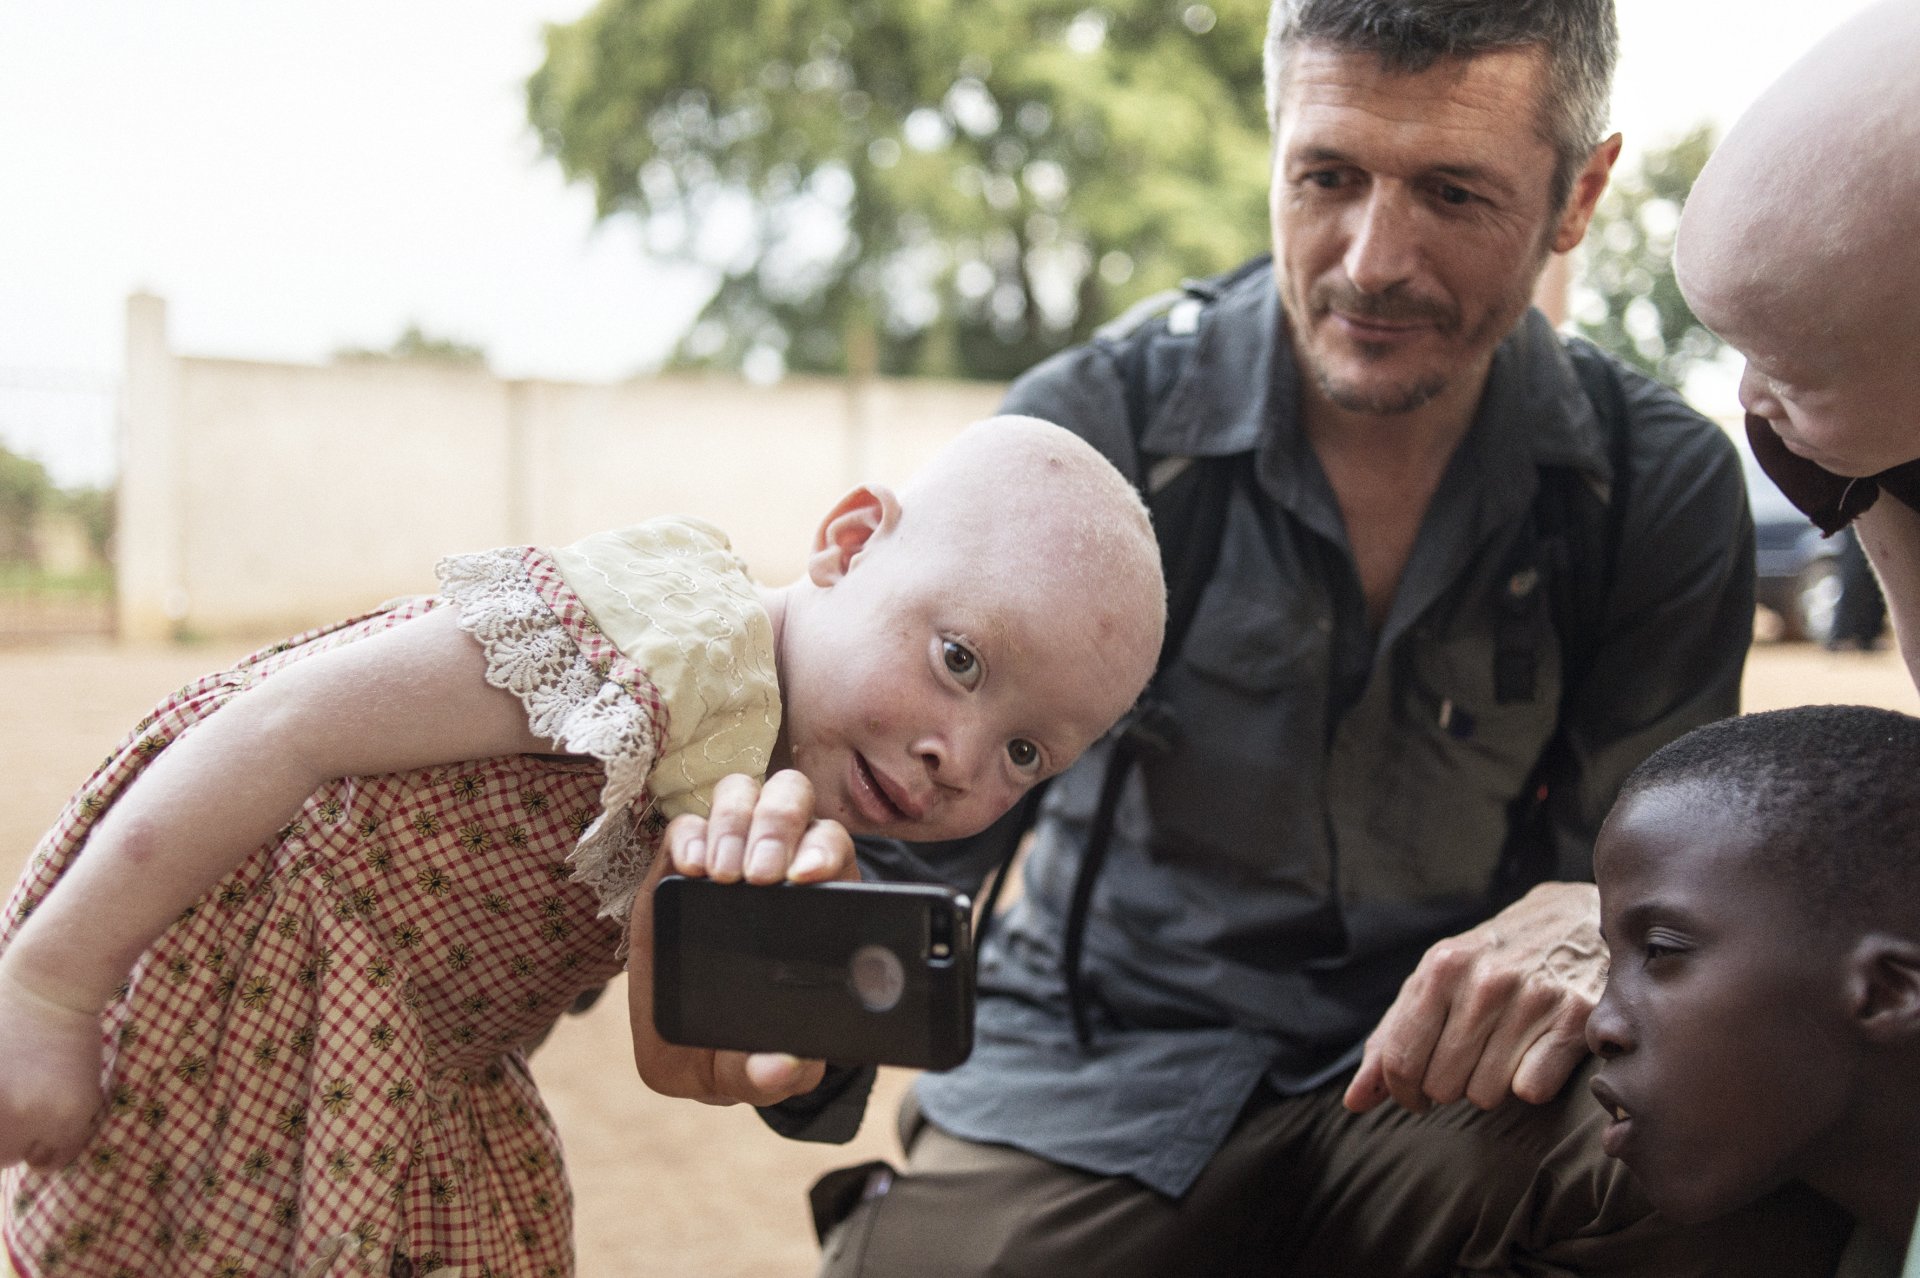 Ein Leben nah an den Menschen: Michael Obert auf Reportage im Hinterland von Tansania, wo Menschen mit Albinismus gejagt und verstümmelt werden, weil ihre Körperteile als magisch gelten und zu astronomischen Preisen verkauft werden (Foto: Matthias Ziegler)